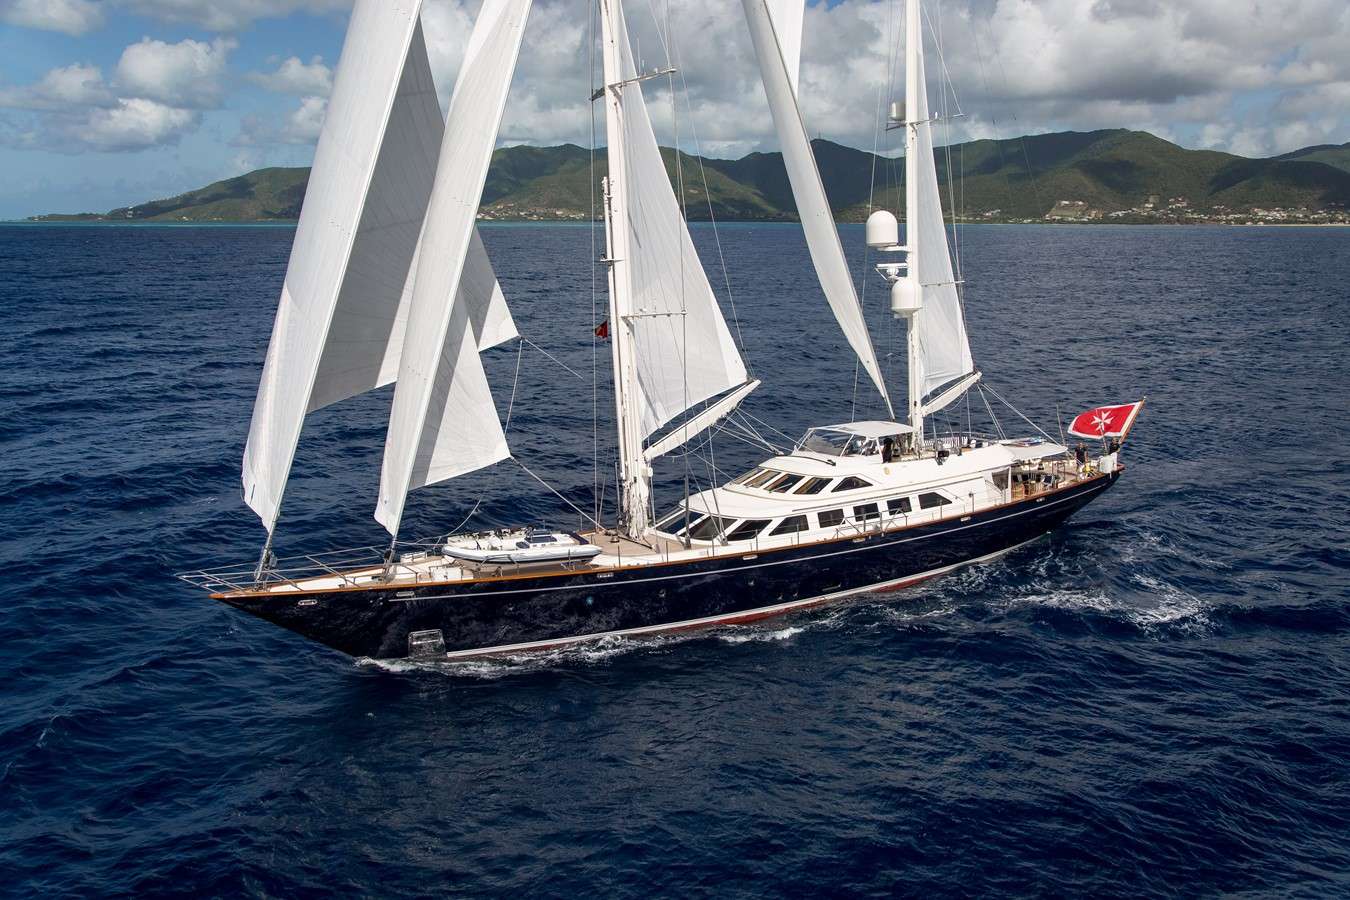 ELLEN - Luxury yacht charter Balearics & Boat hire in W. Med -Naples/Sicily, W. Med -Riviera/Cors/Sard., Caribbean Leewards, Caribbean Windwards, Turkey, W. Med - Spain/Balearics, Caribbean Leewards, Caribbean Windwards 1